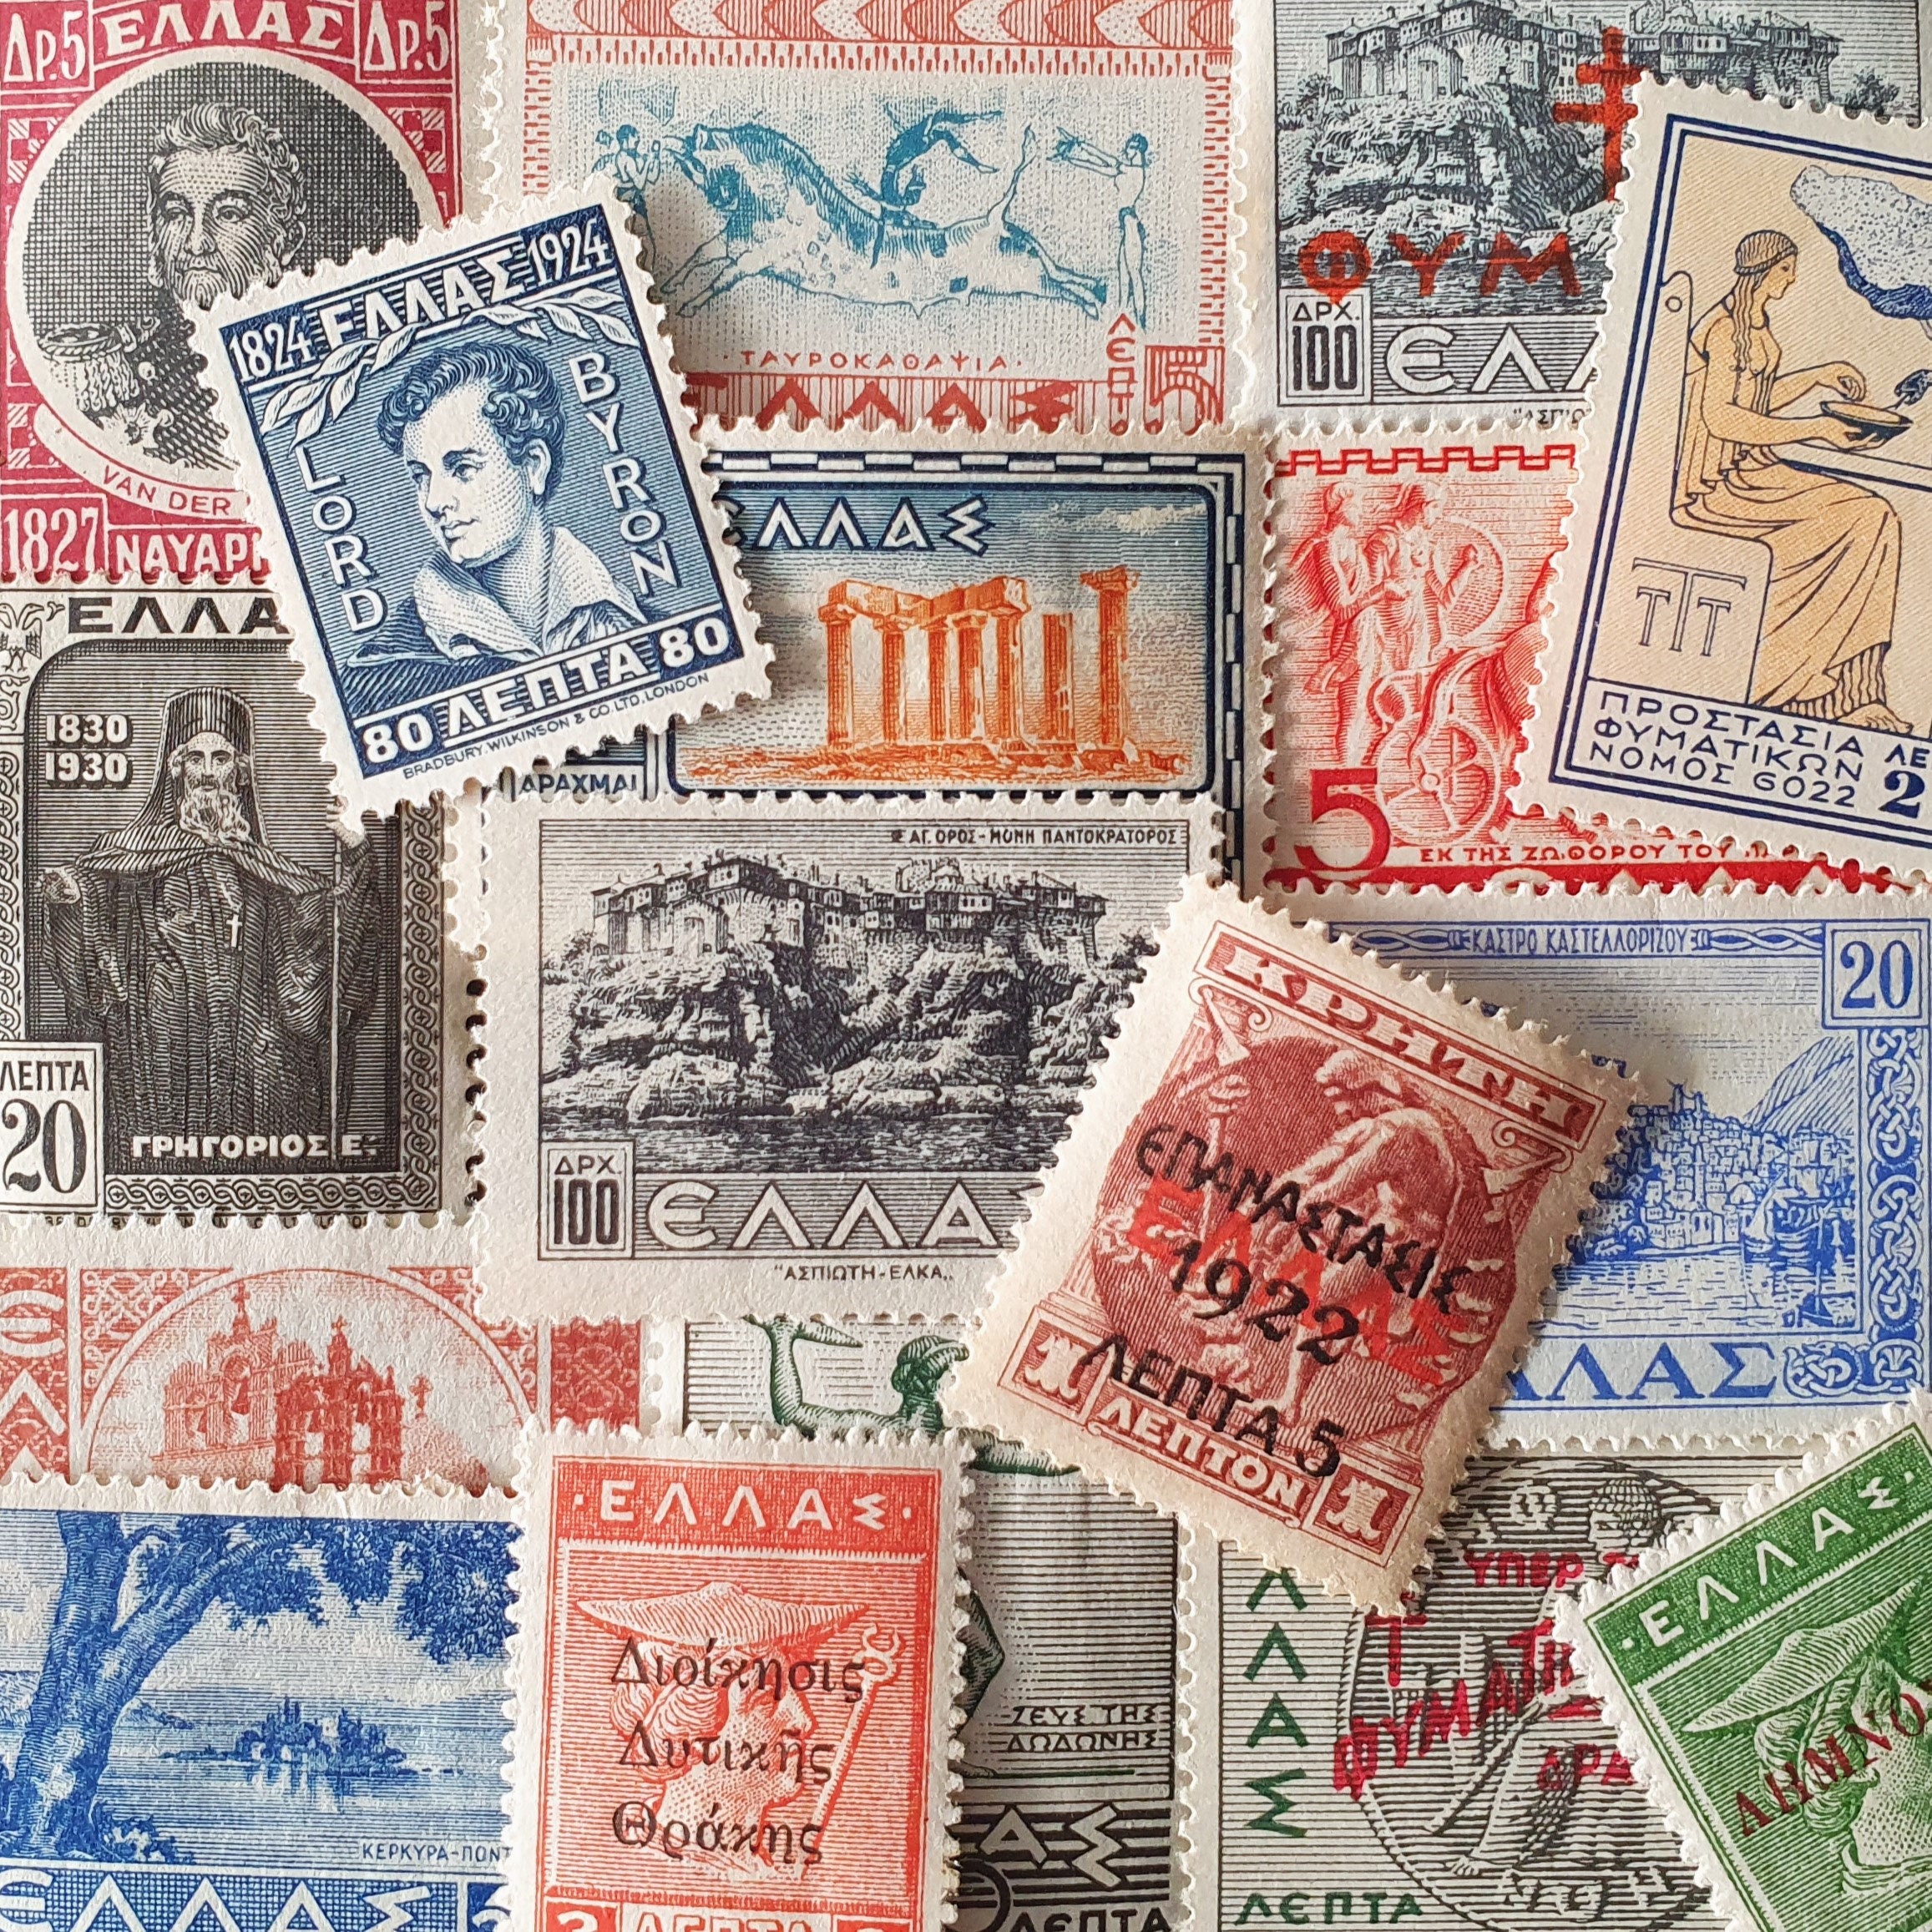 20 GREECE GREEK Collector Set Vintage Postage Stamps Ruins Landscapes  Statues Crafts Collage Ephemera Altered Art Philately Stamp Albums 1f 